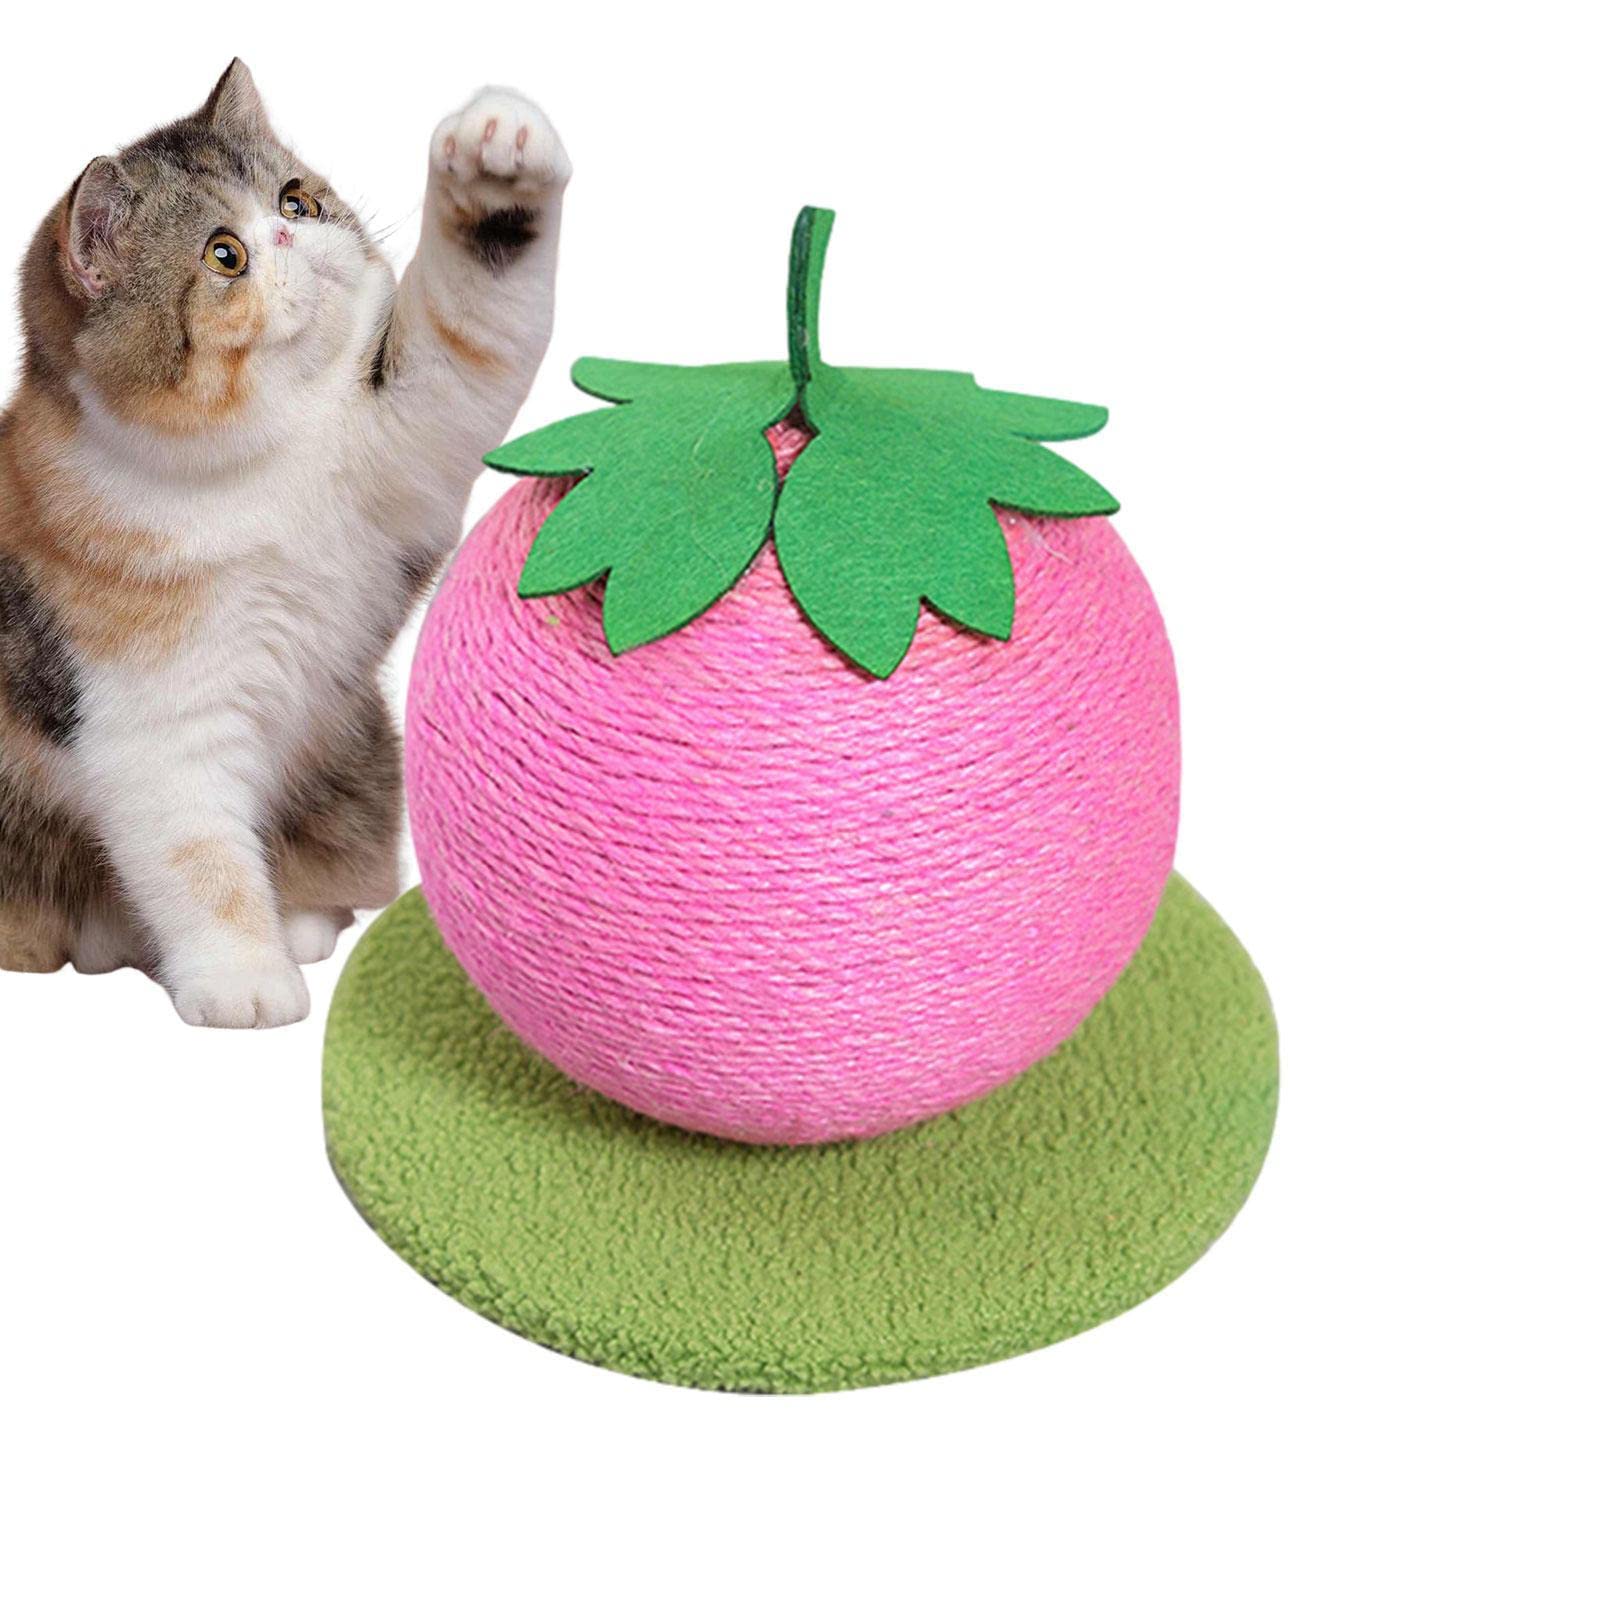 Katzenkratzball,Kratzbaum in Fruchtform für Hauskatzen - 10-Zoll-Katzenkratzbaum für Erwachsene Katzen und Kätzchen, moderner Katzenkratzbaum aus natürlichem Sisal zur Entlastung